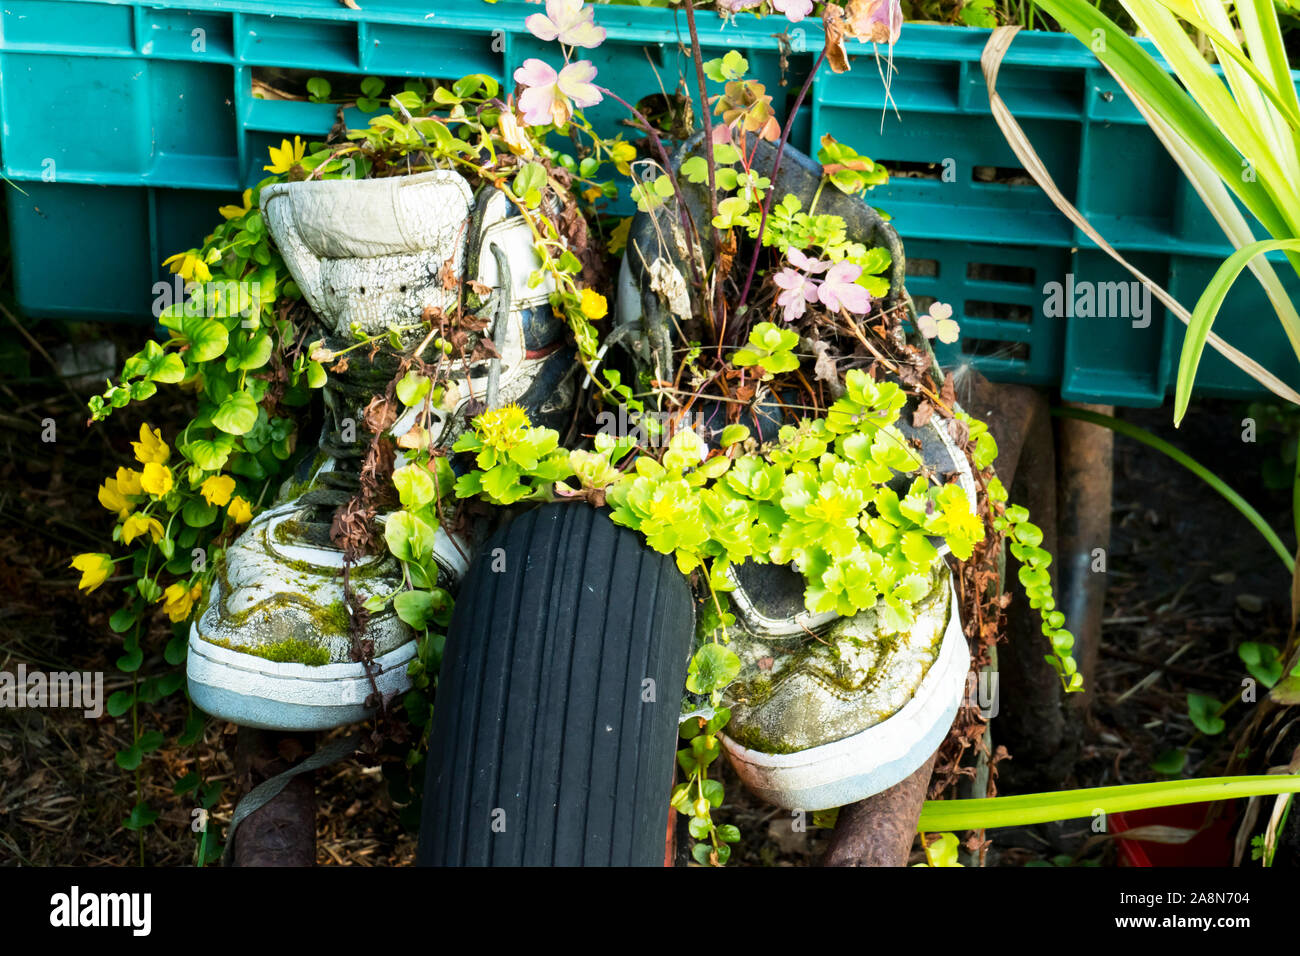 Ein Paar Turnschuhe mit Pflanzen bewachsen und überwuchert Stock Photo